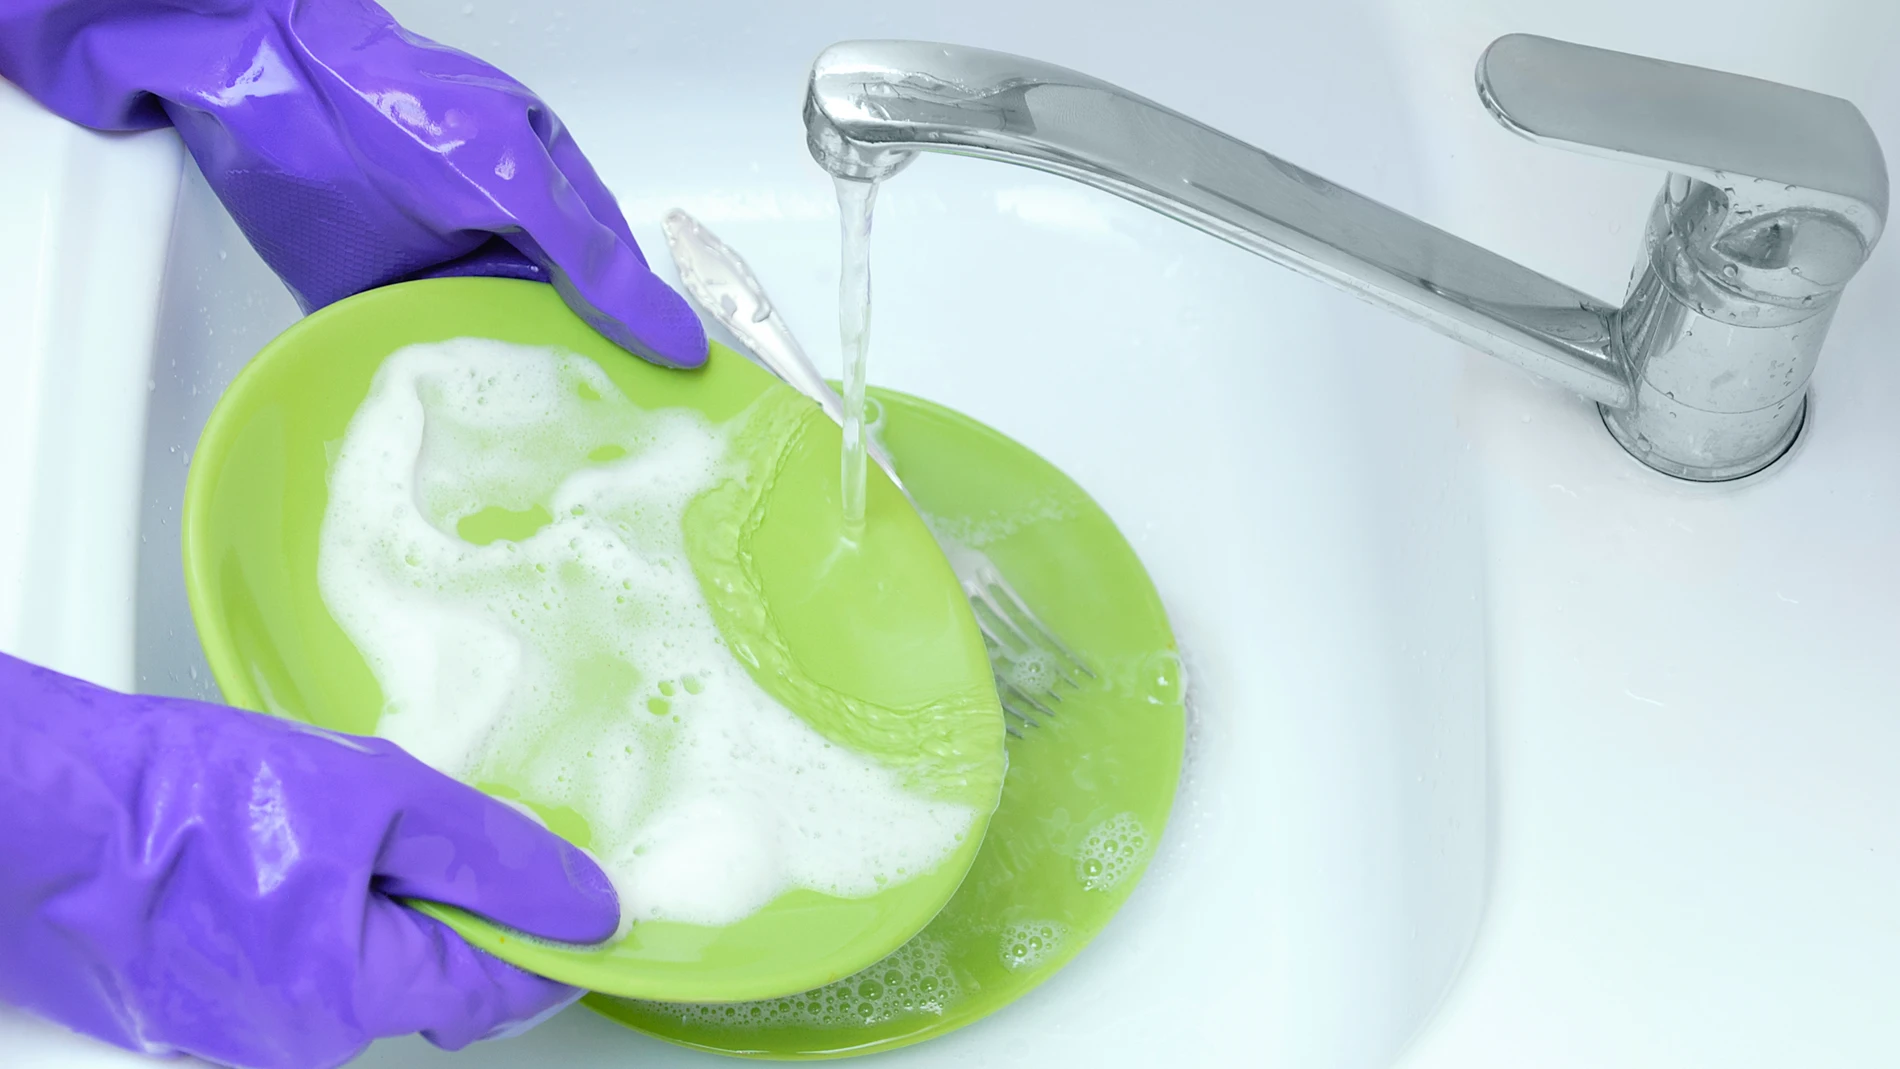 Enjuagar platos en el fregadero está desaconsejado por los fabricantes de los electrodomésticos y de los detergentes | Europa Press